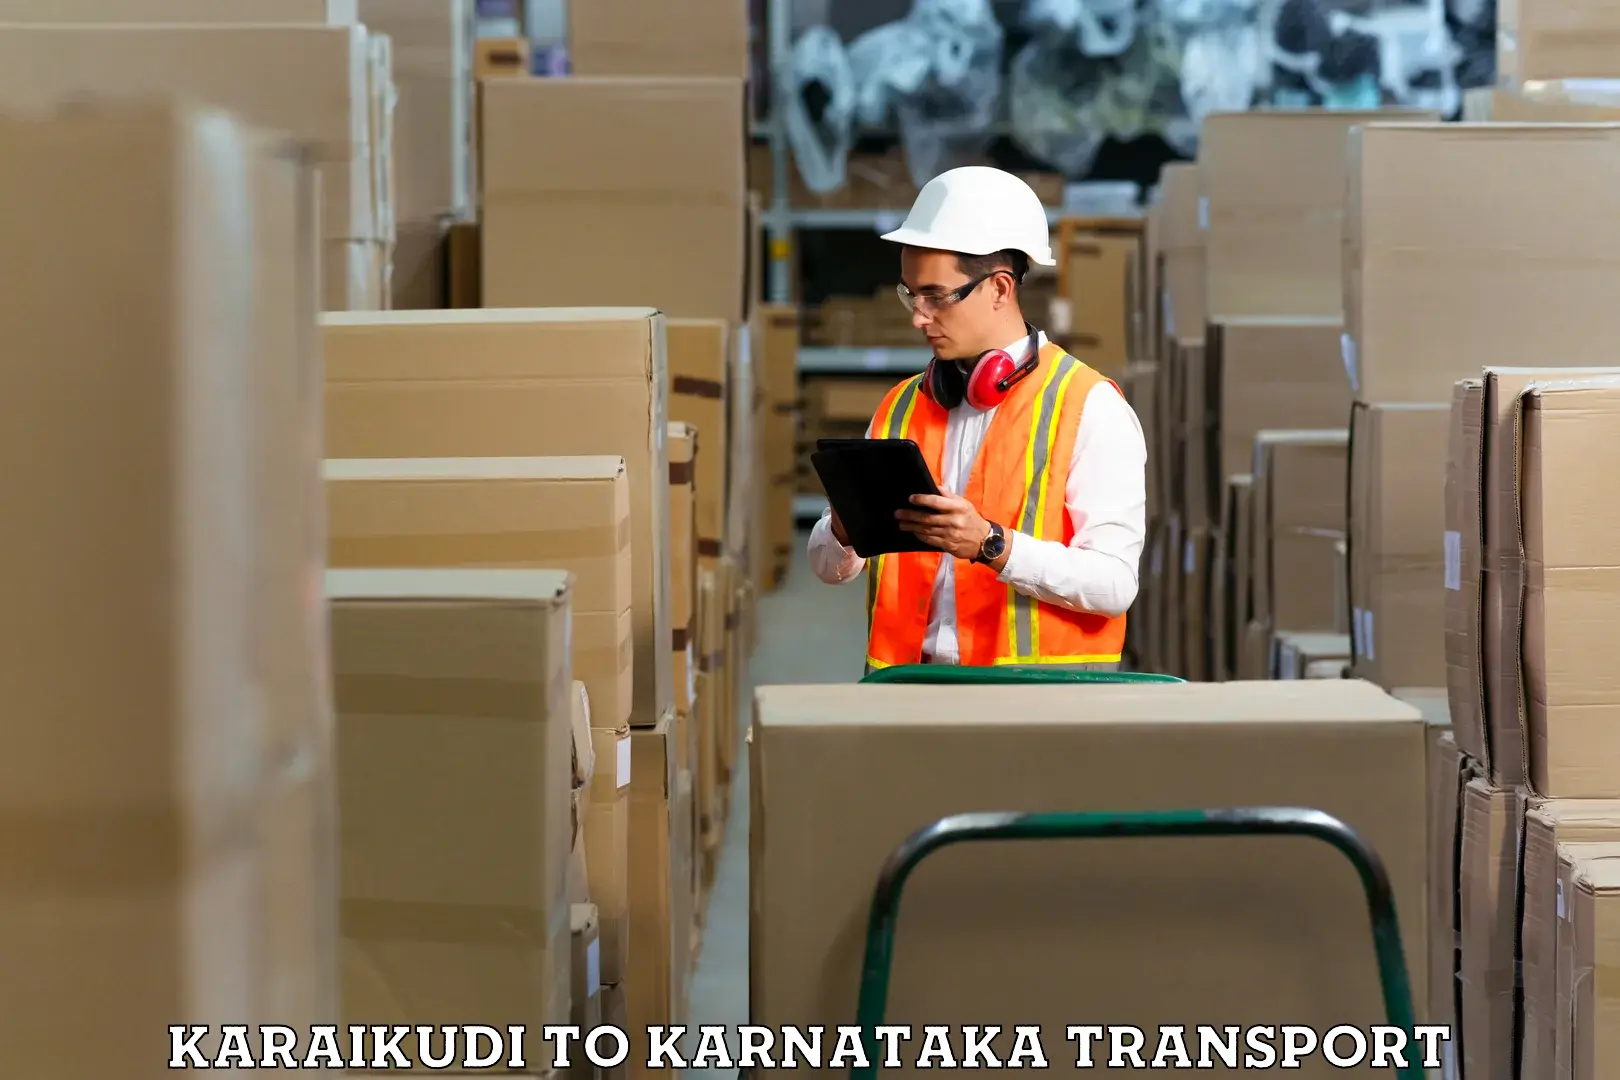 Online transport service Karaikudi to Chikkamagalur